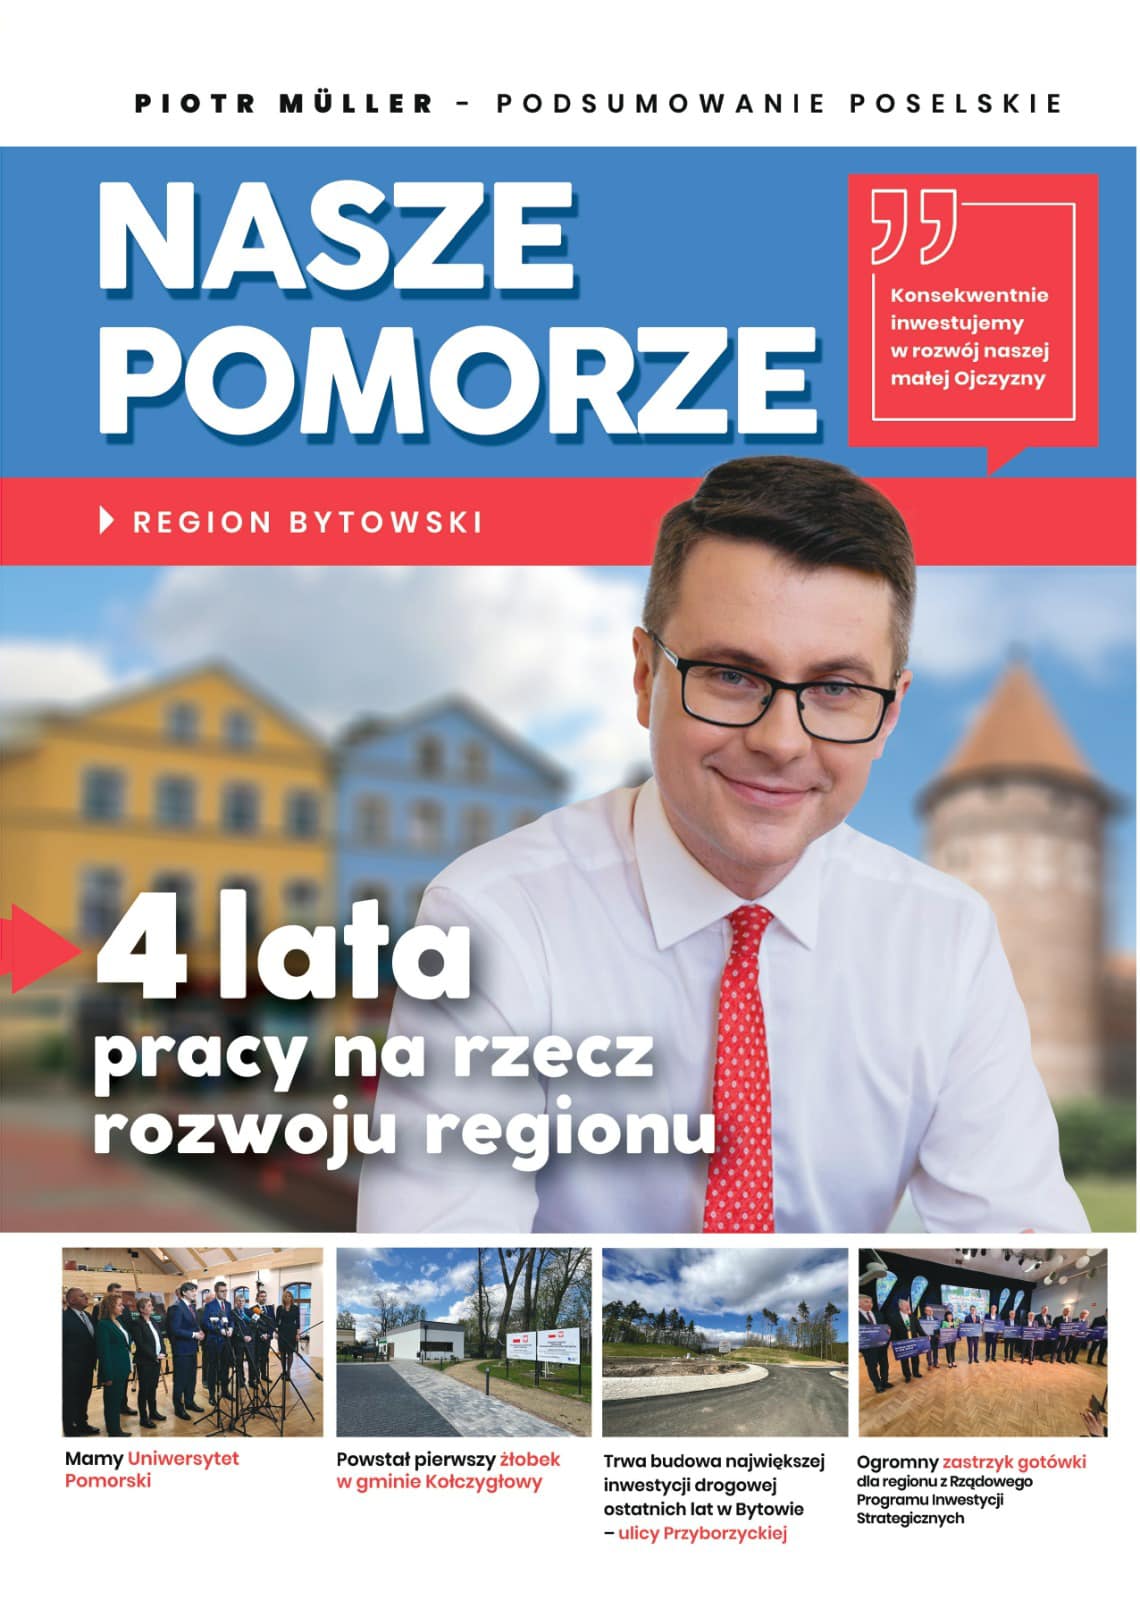 Przedstawiamy Państwu sprawozdanie poselskie posła na Sejm RP Piotra Müllera - www.naszepomorze.pl 